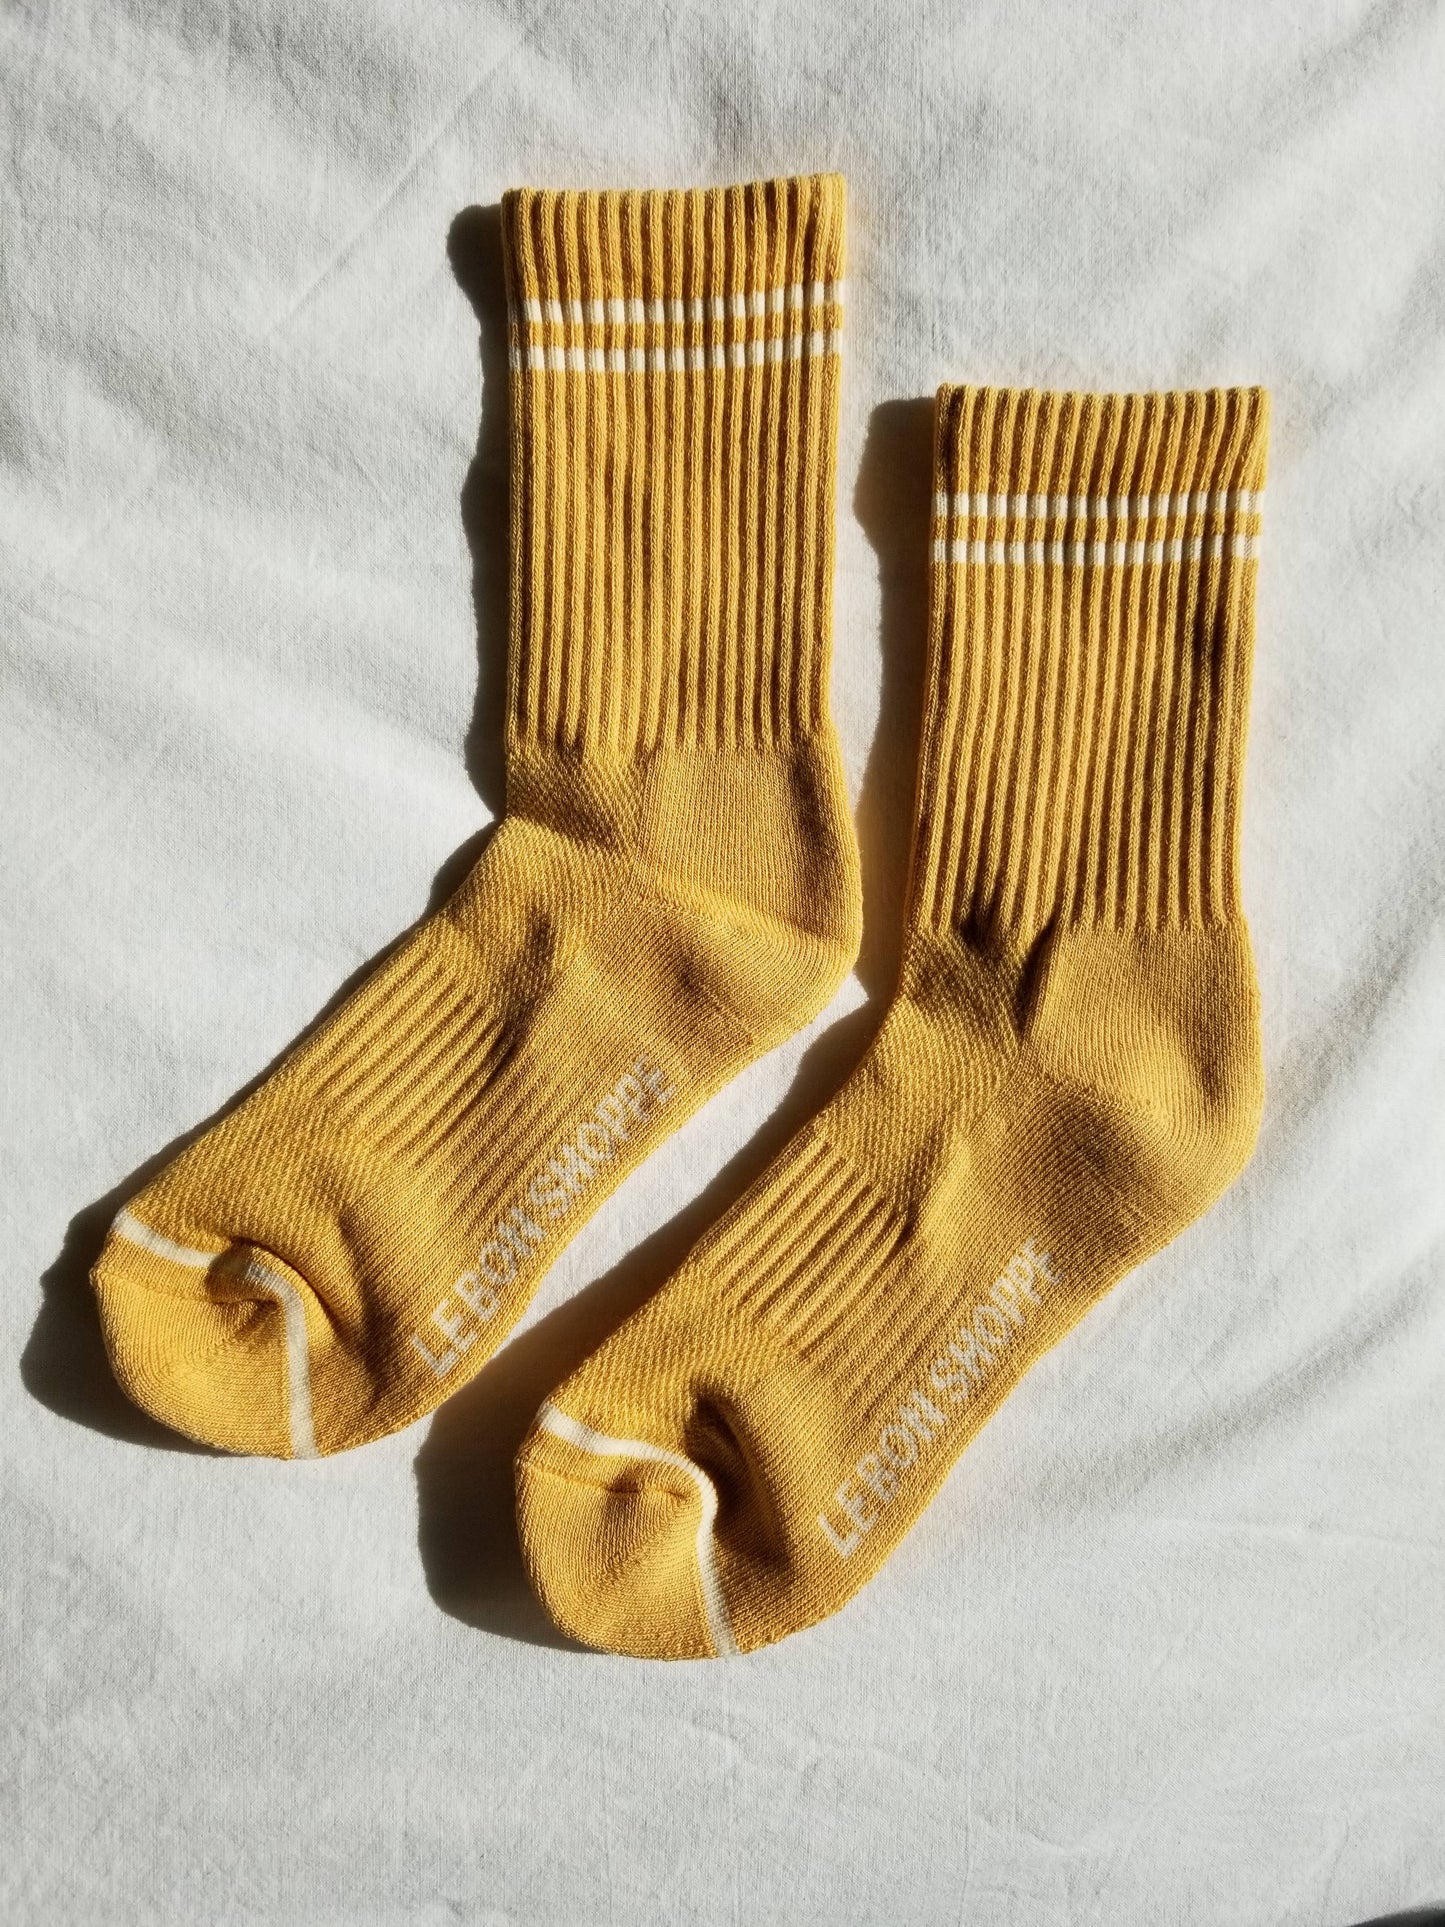 Boyfriend Socks: Meadow